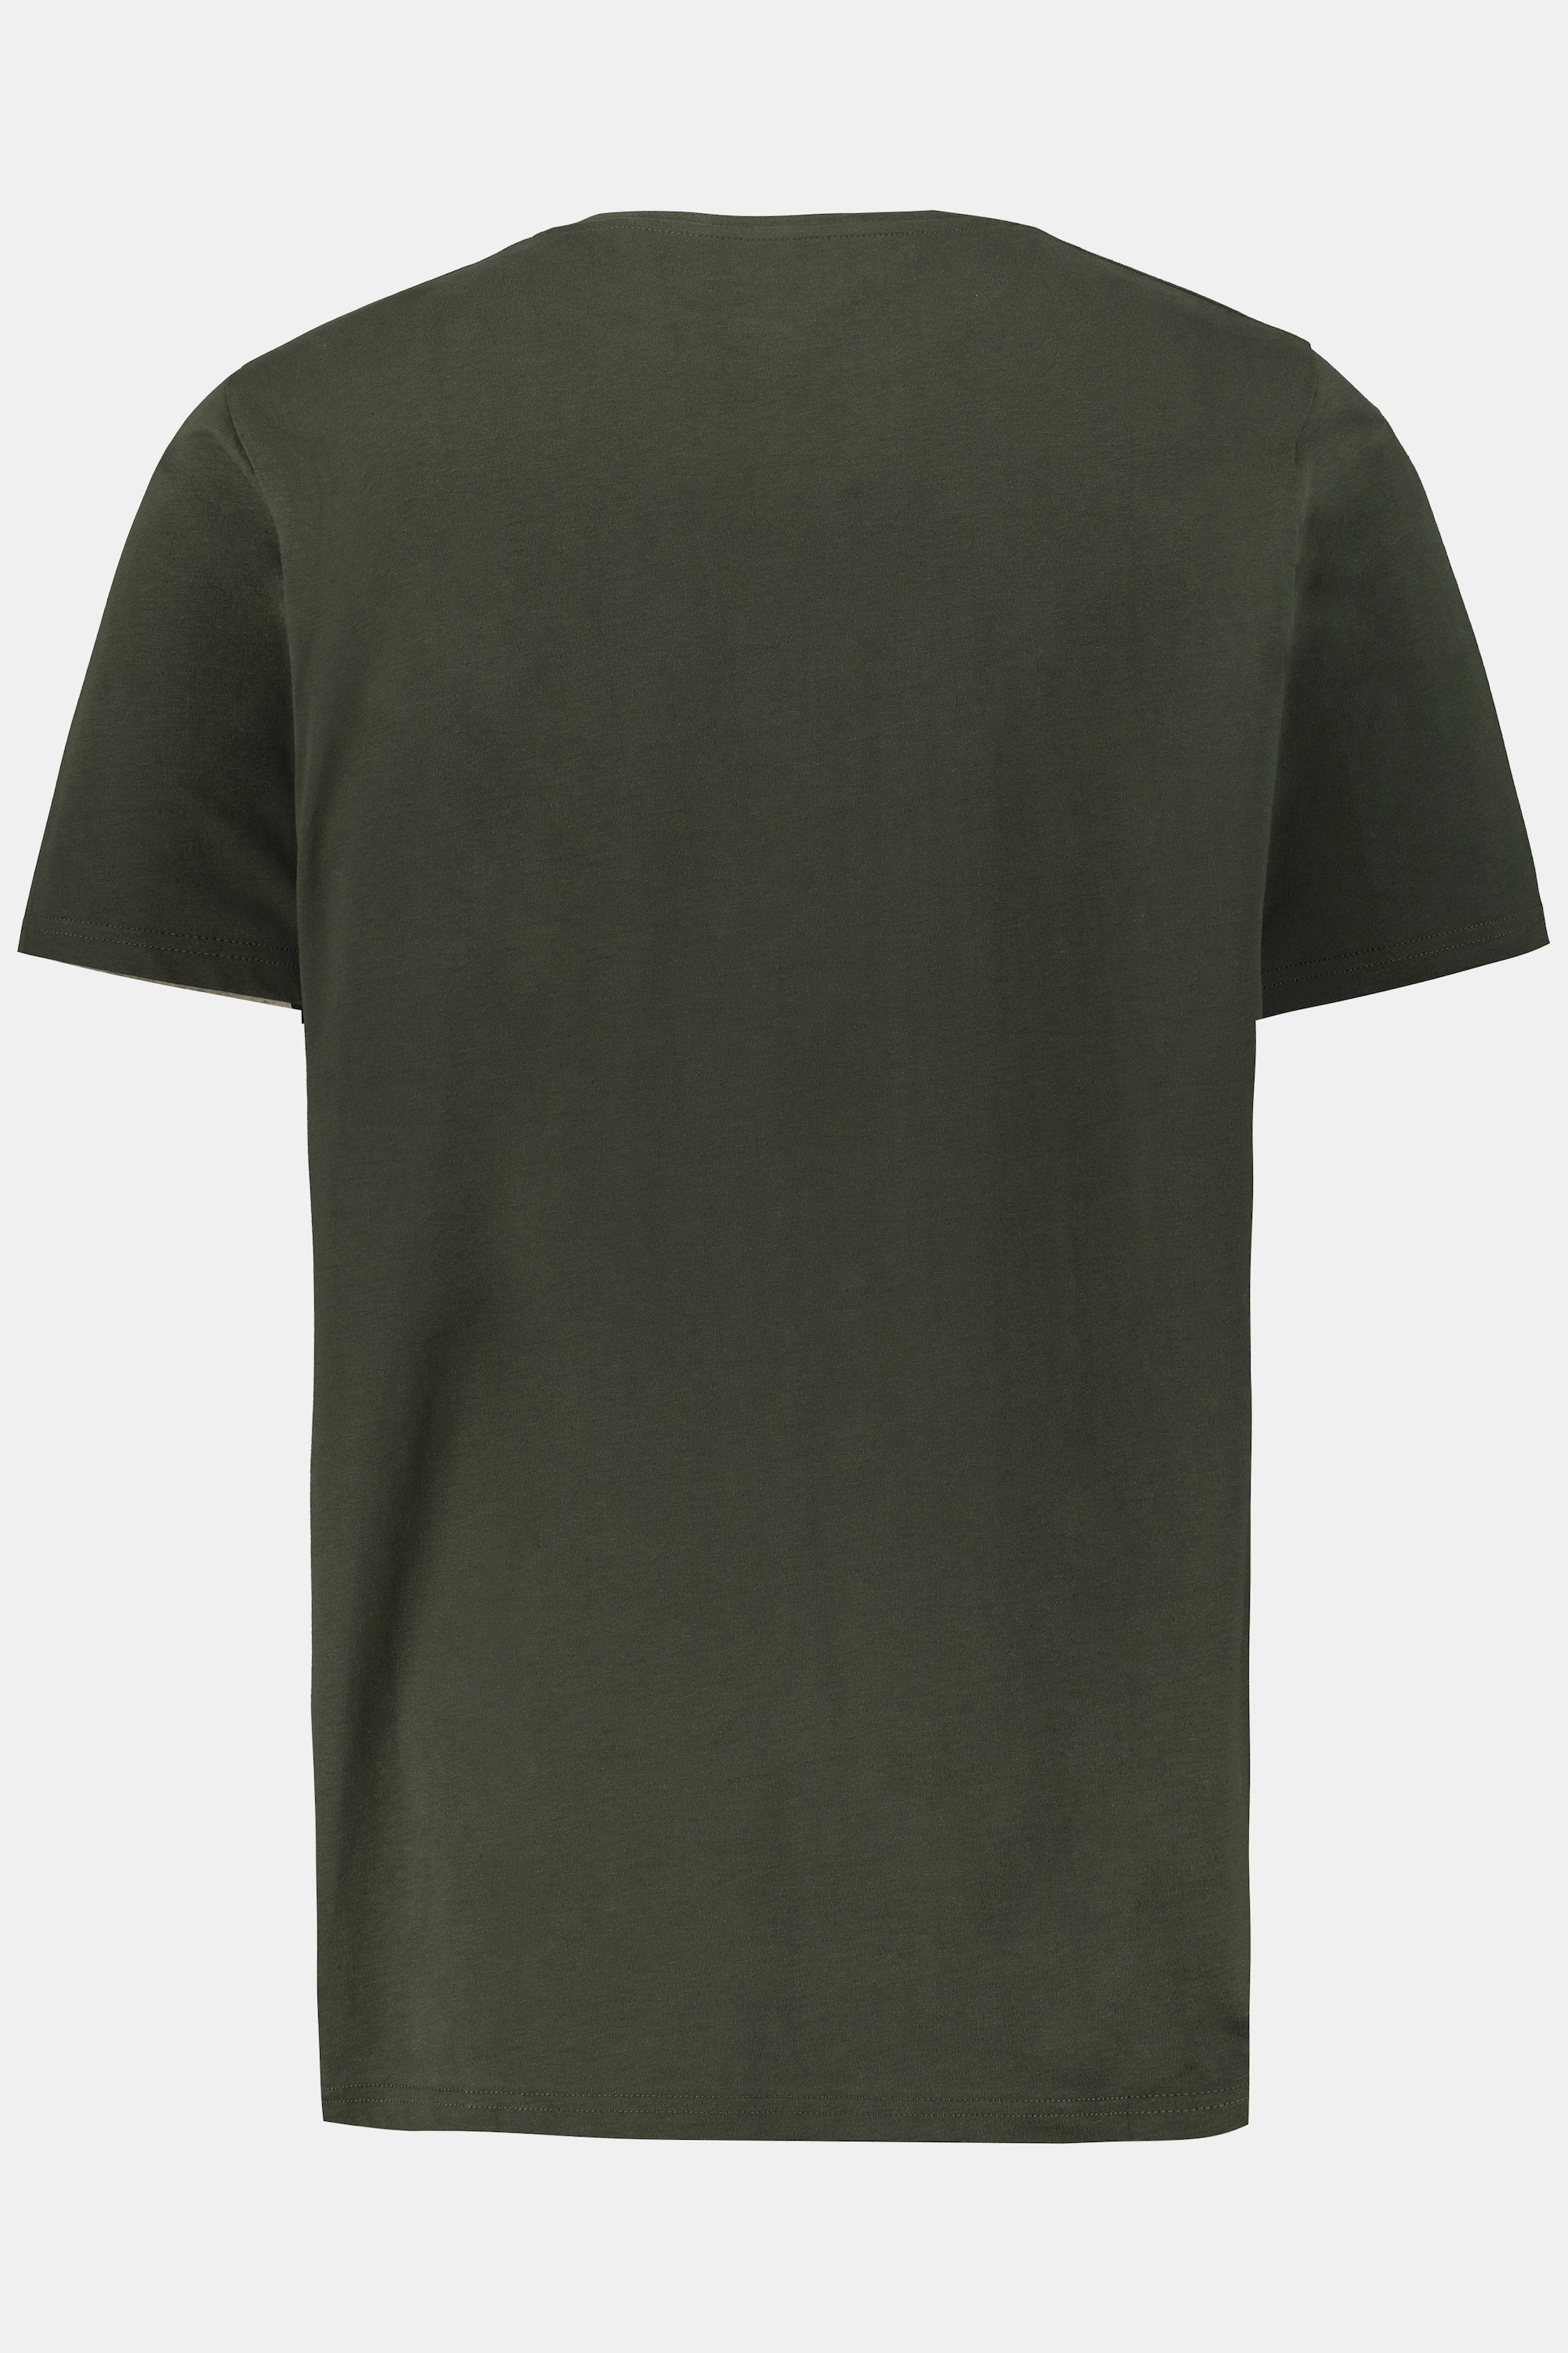 dunkel T-Shirt Henley oliv JP1880 Halbarm Knopfleiste Basic